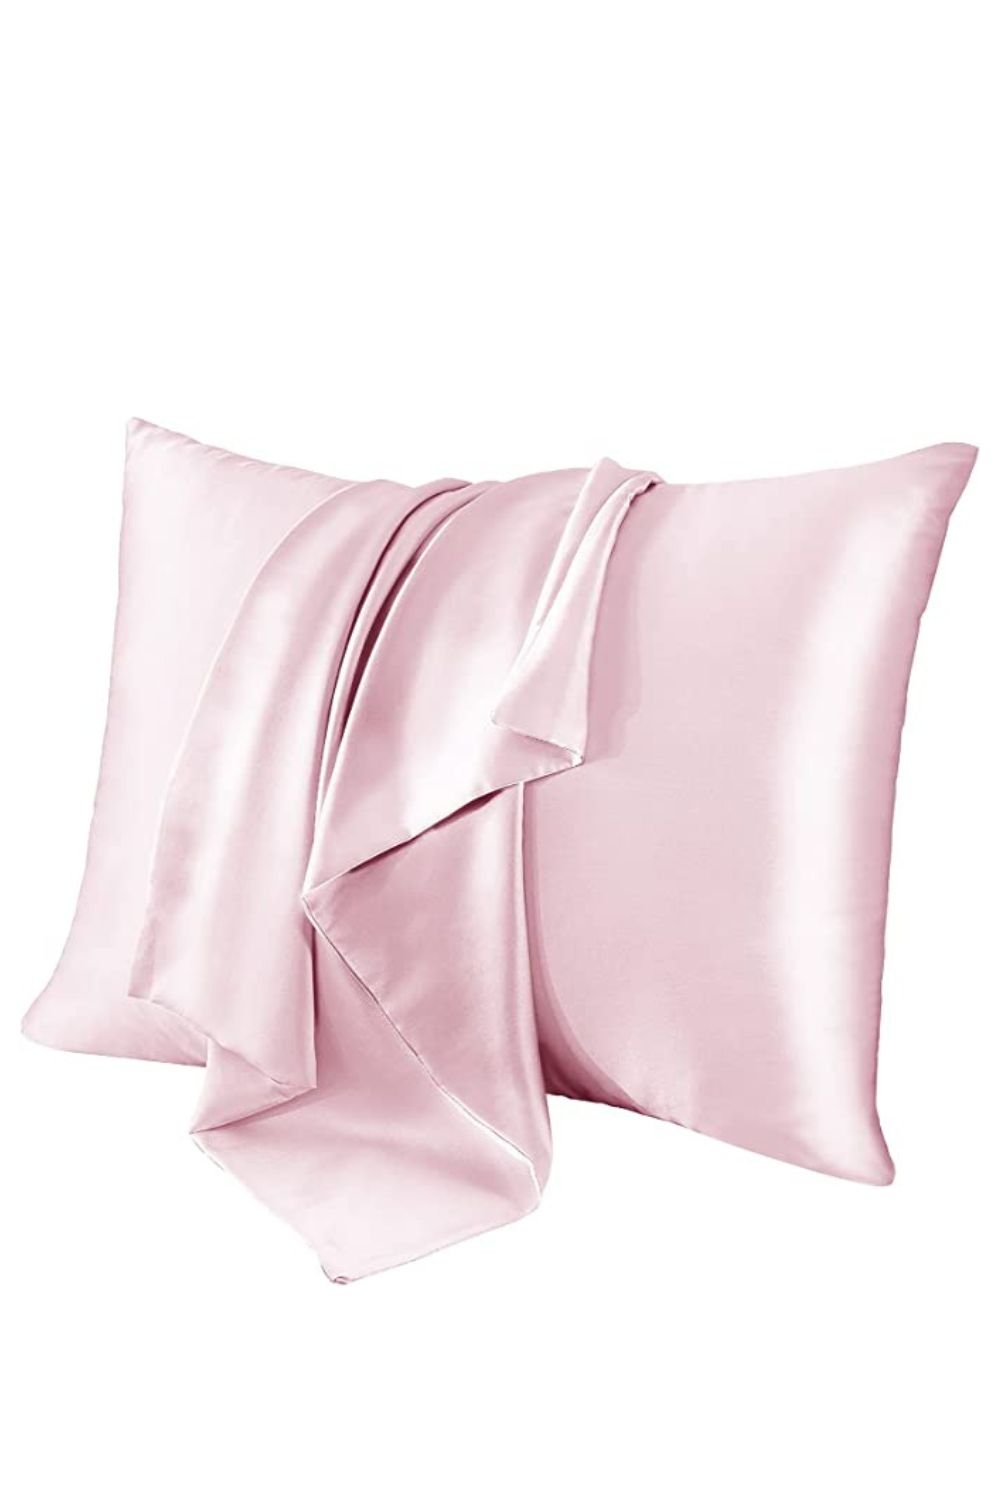 100% Silk Pillowcase for Hair and Skin